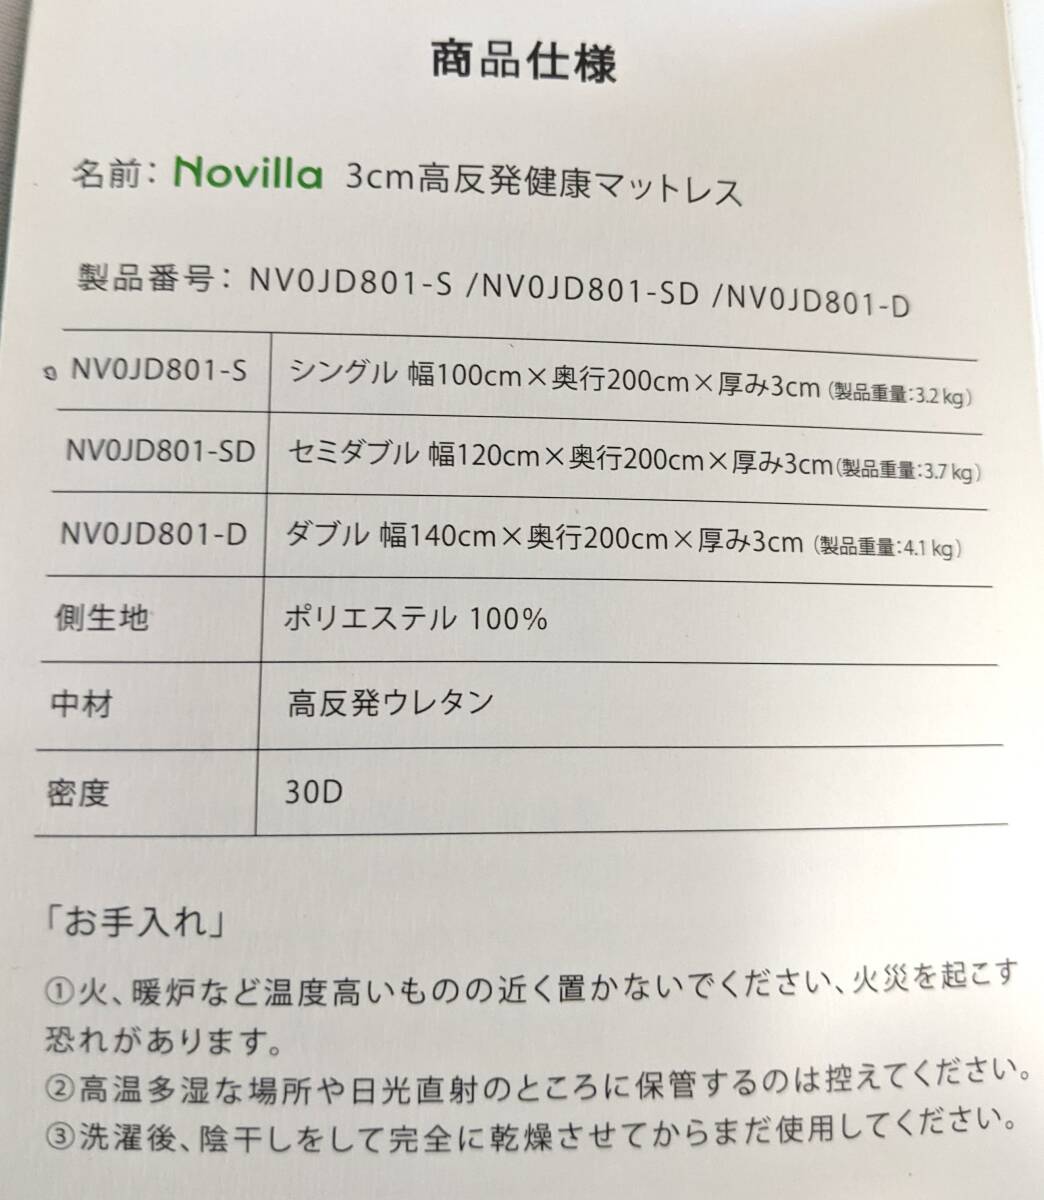 【1円出品】Novilla 3cm高反発健康マットレス NV0JD801-S シングル100×200×3cm ホワイト 硬さ160N 高密度ウレタン 開封カッター付き_画像6